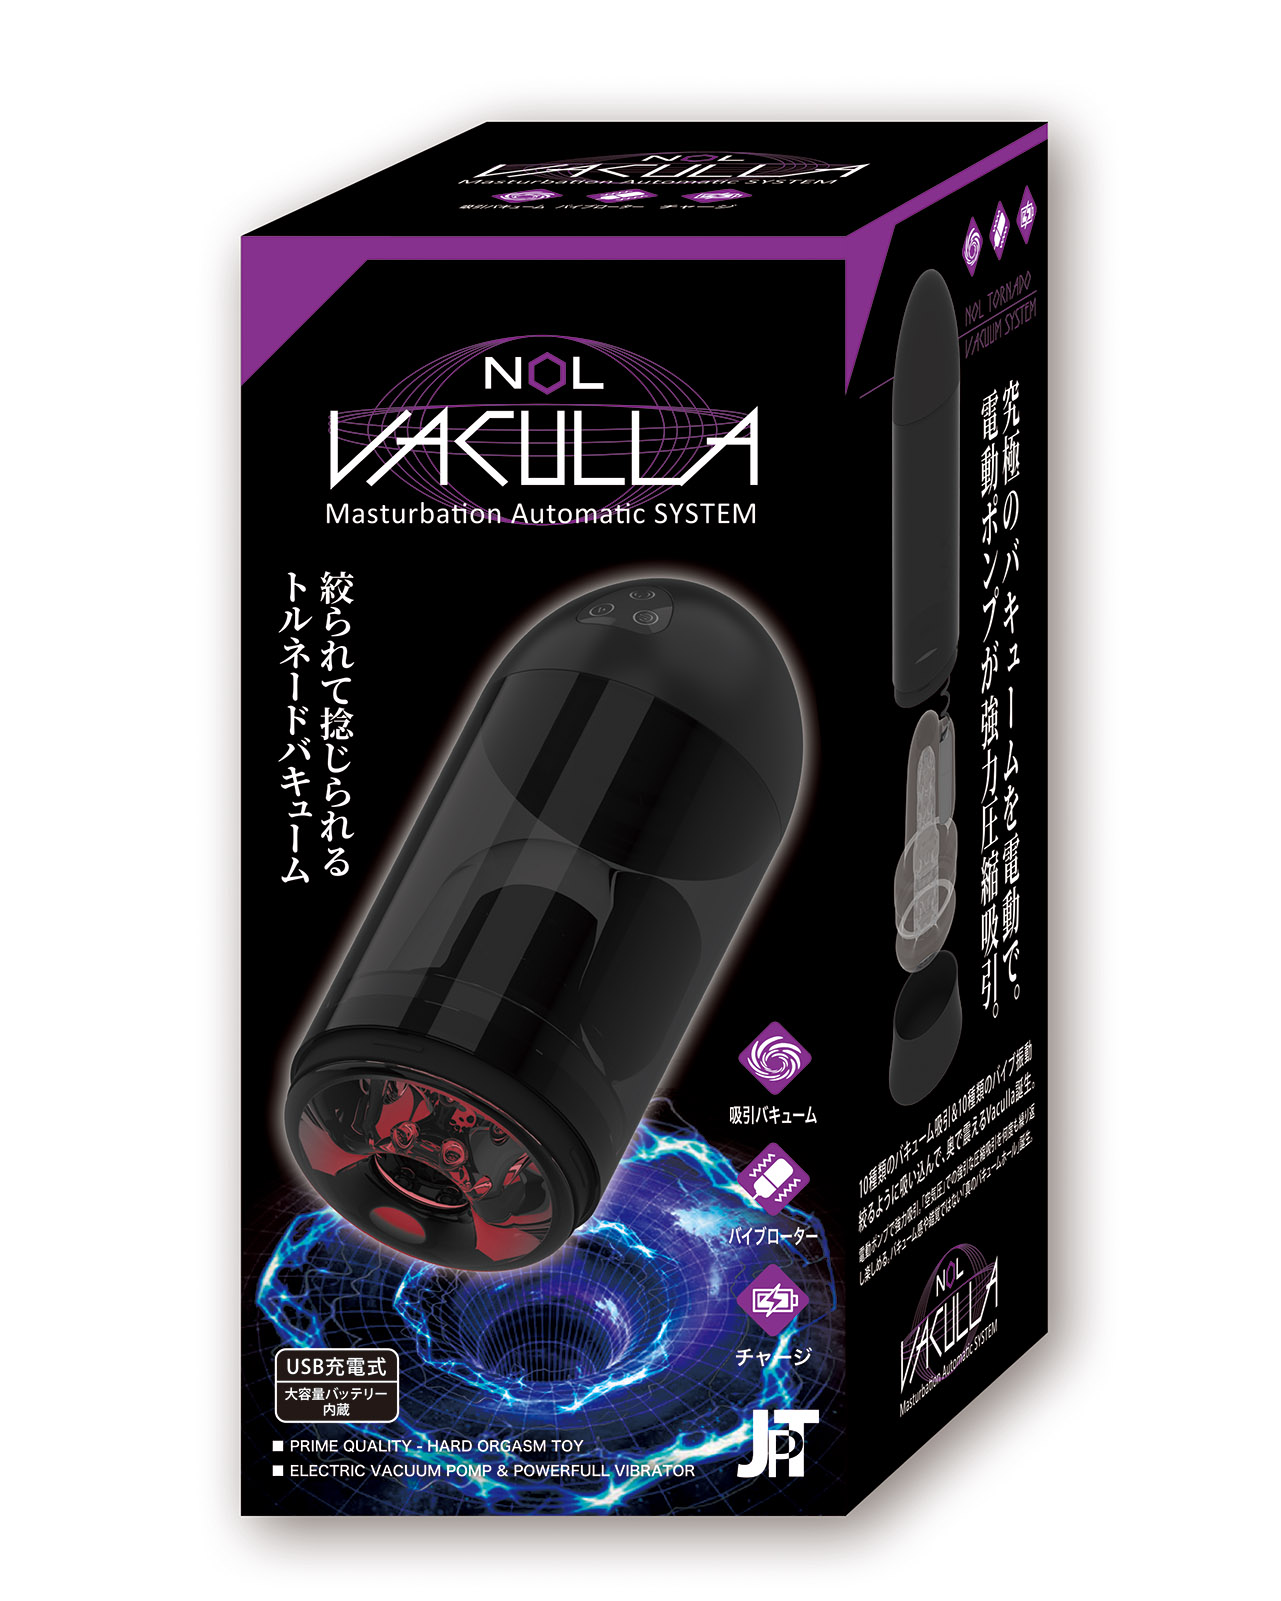 JAPAN-TOYZ NOL VACULLA（バキュラ）の製品概要08